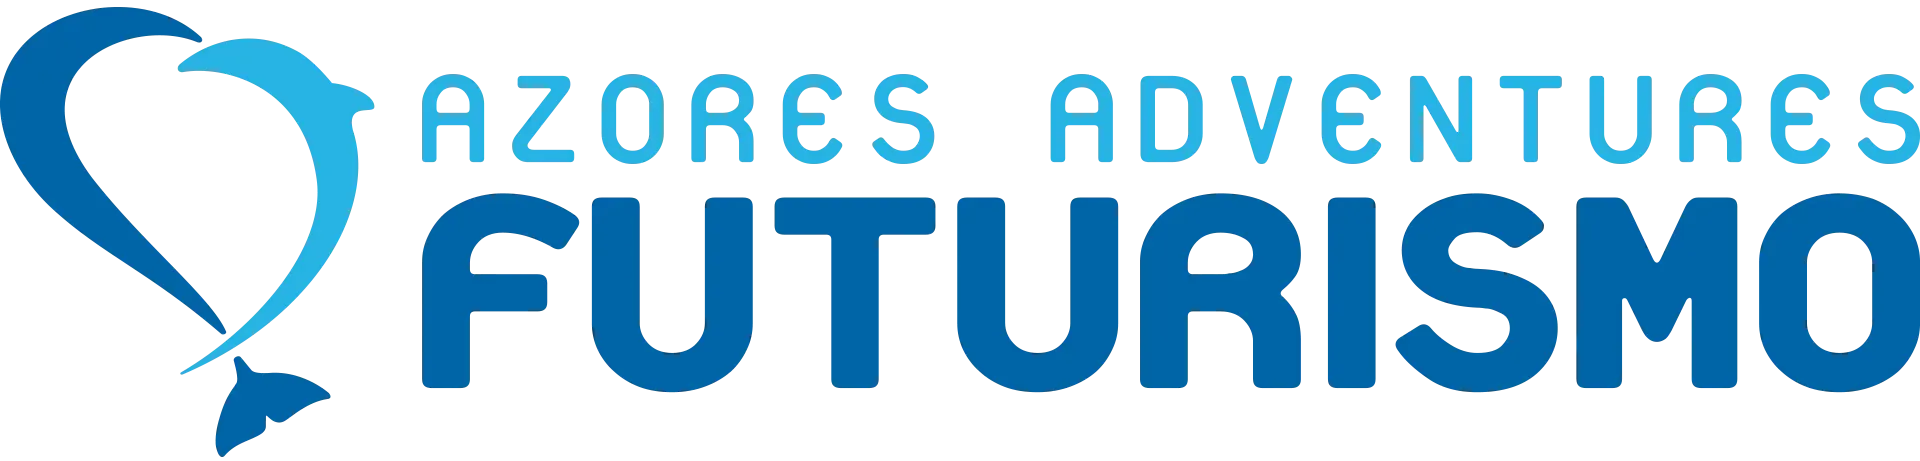 logo-futurismo-azores-adventures (1)